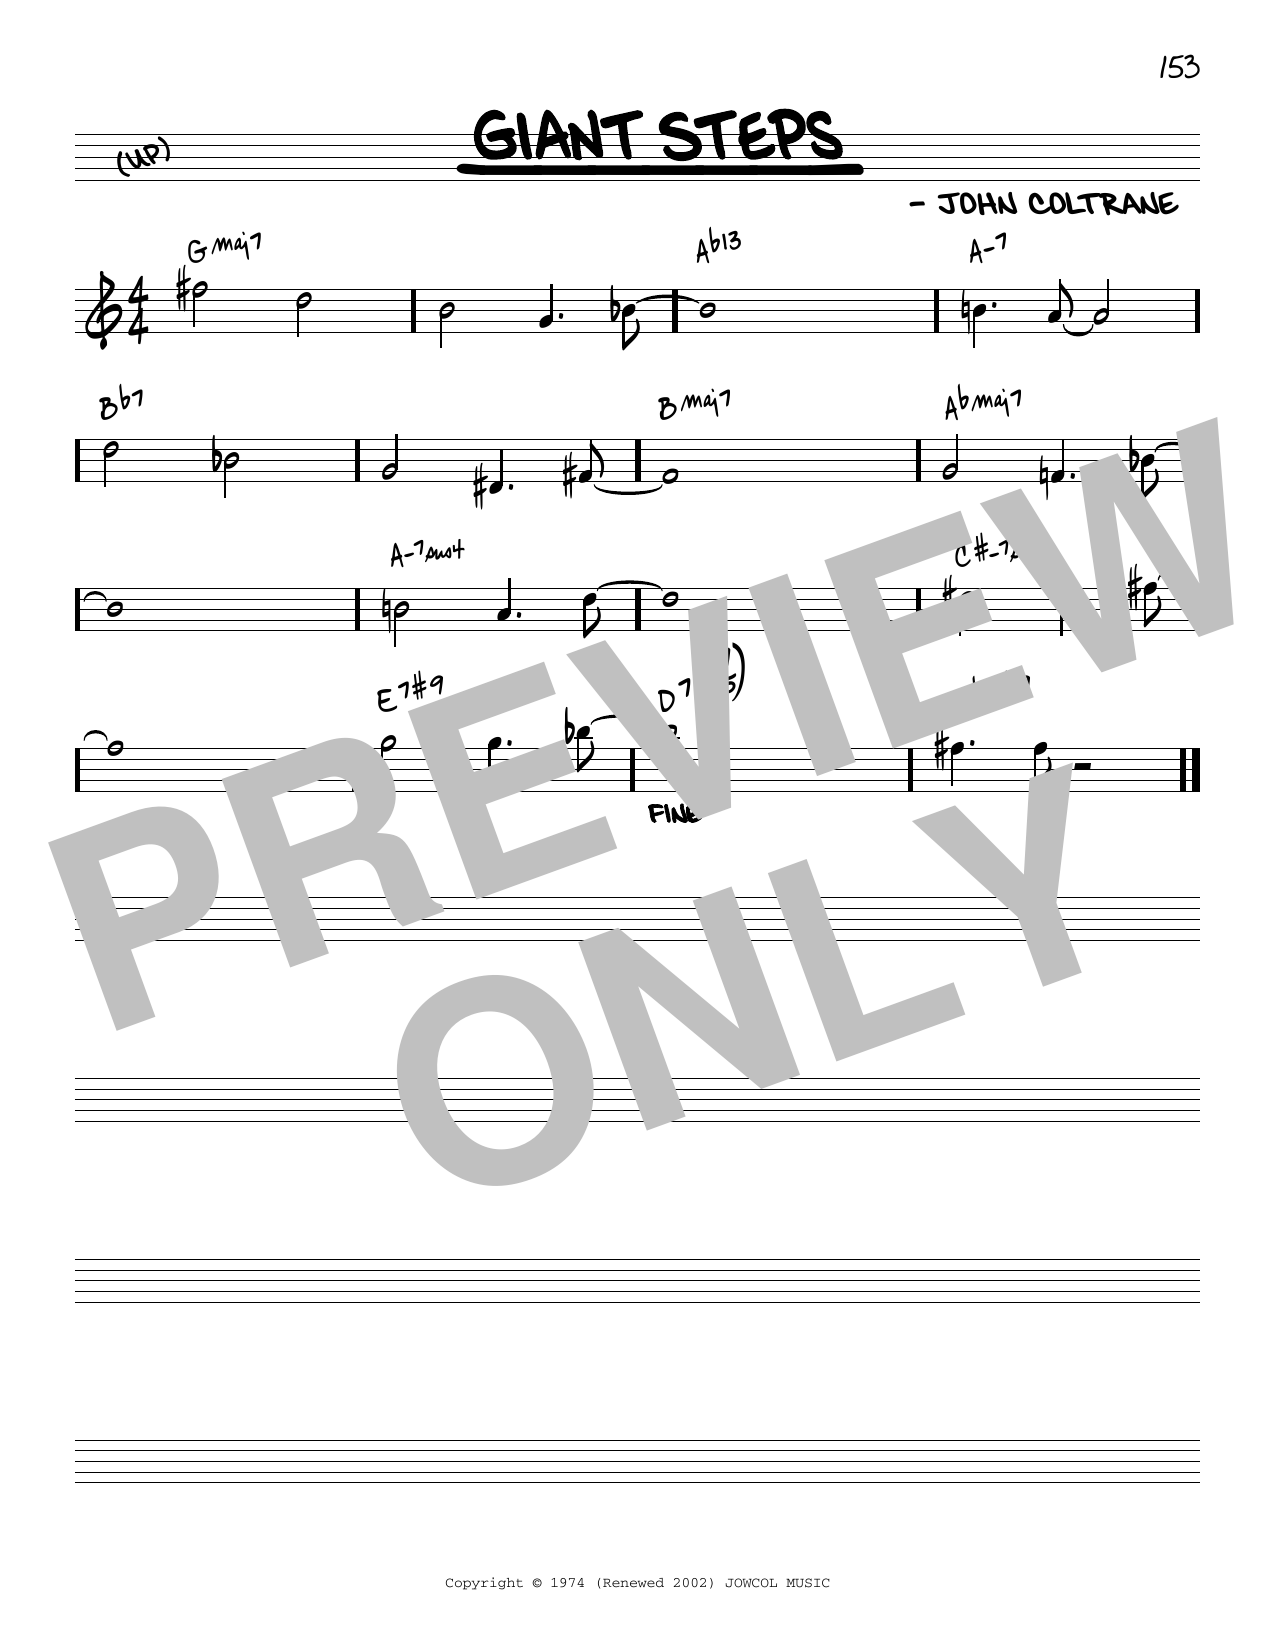 Download John Coltrane Giant Steps [Reharmonized version] (arr Sheet Music